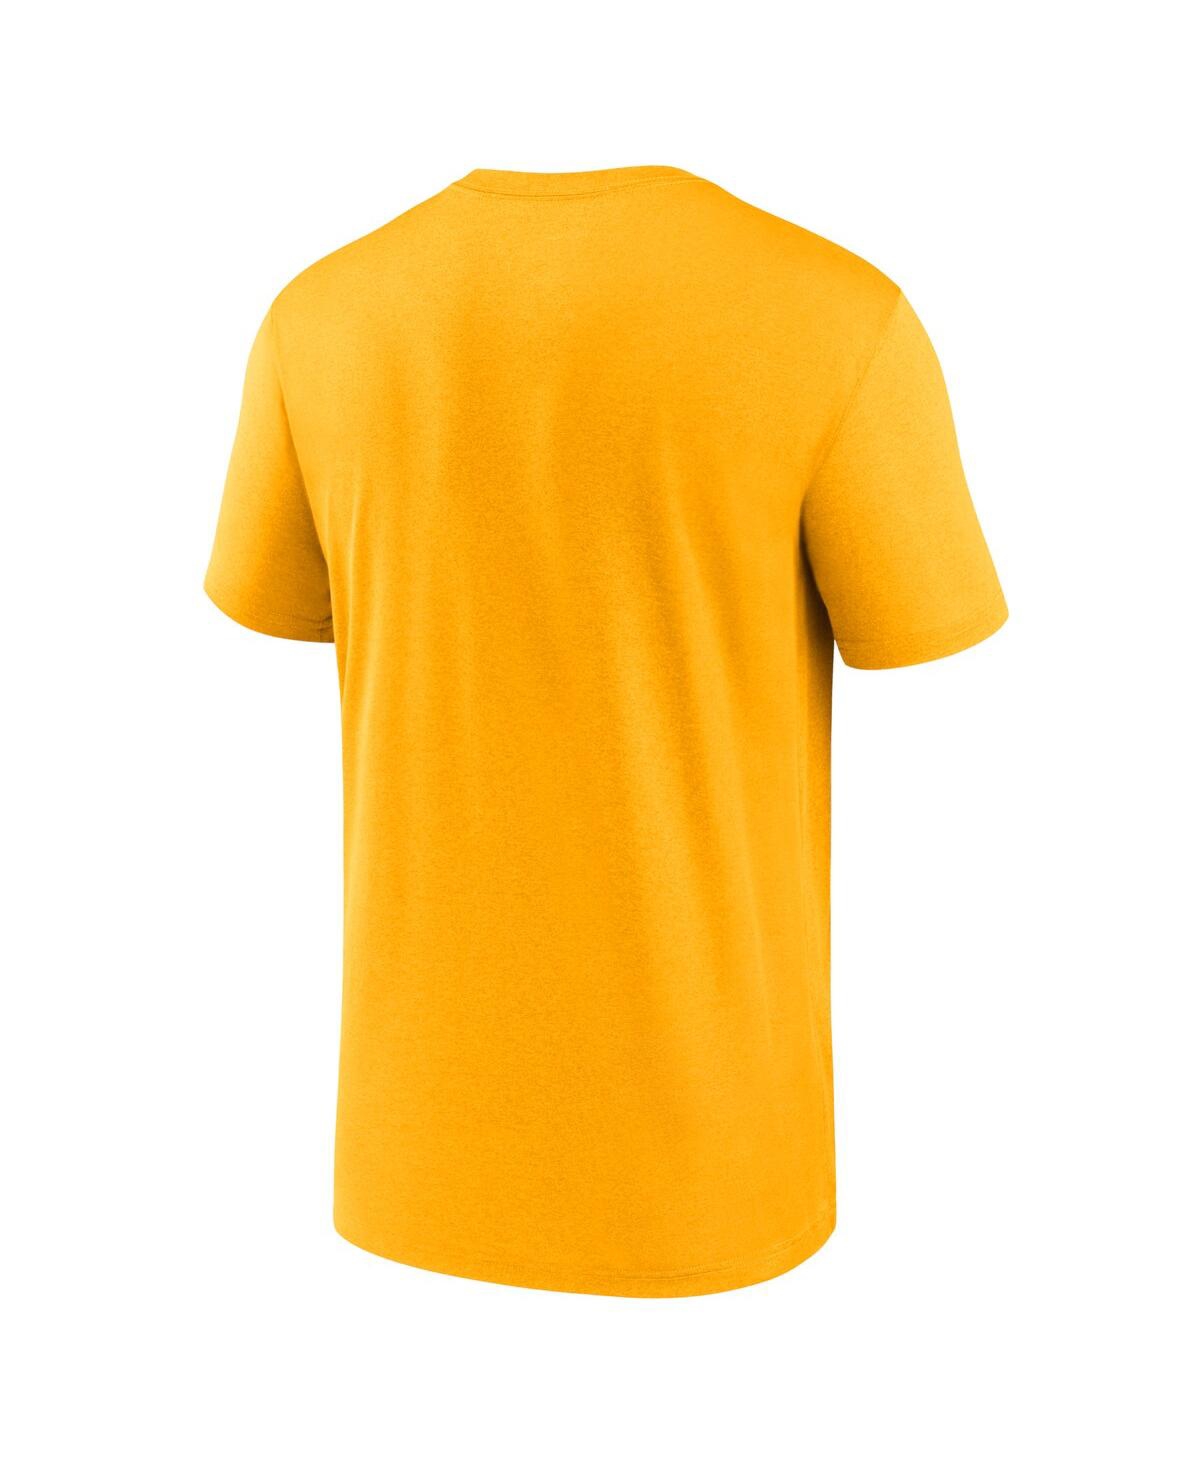 Shop Nike Men's  Gold Milwaukee Brewers New Legend Wordmark T-shirt